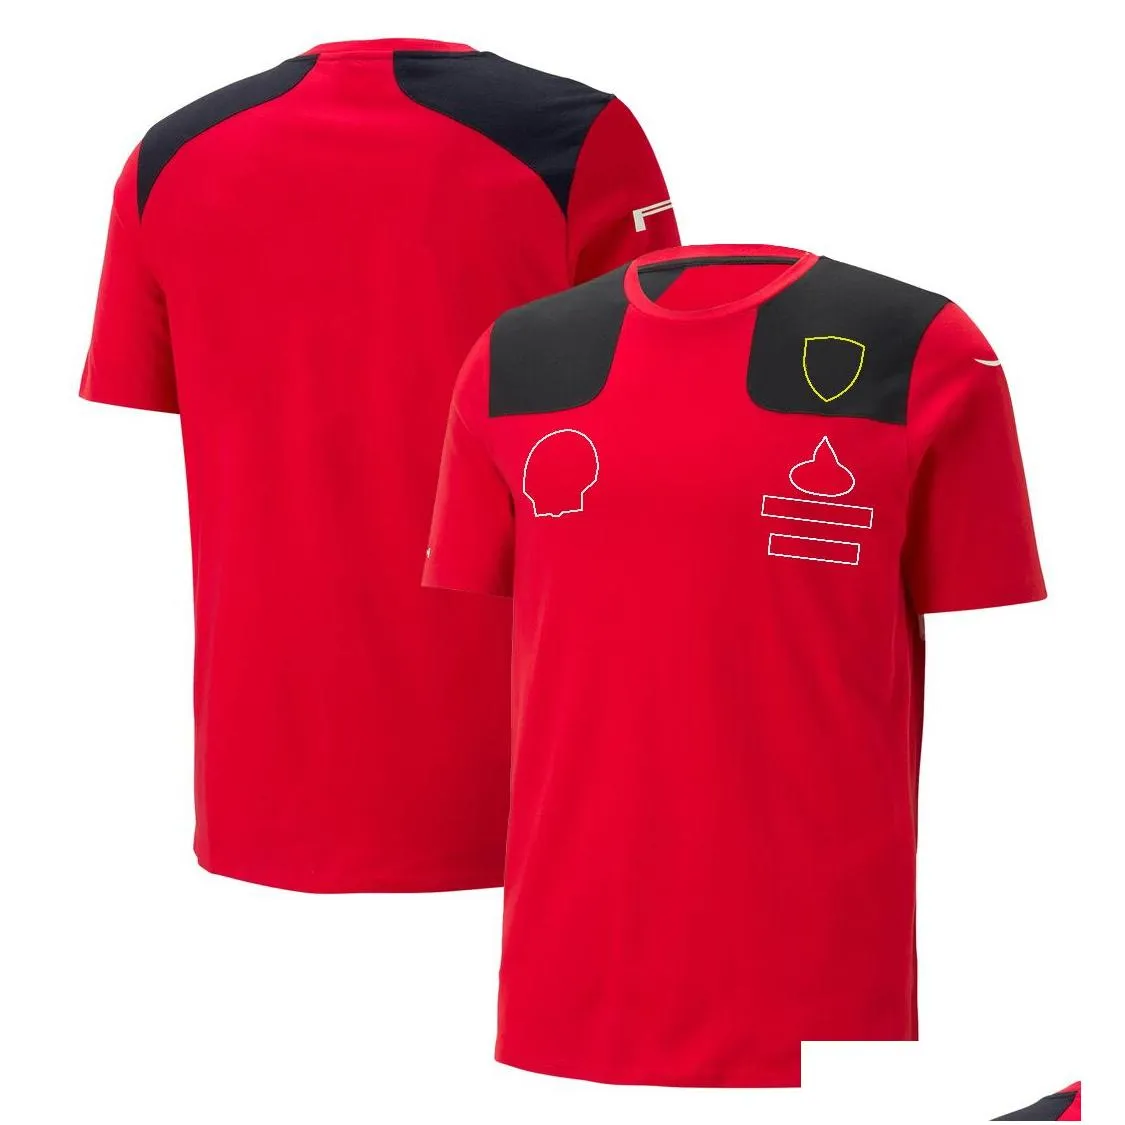 Neue T-Shirts für Herren und Damen, Formel-1-F1-Polobekleidung, Top-Motorradbekleidung, das meistverkaufte Forma Red Team-Rennanzug, Reverskleidung, Arbeitskleidung, kurze Ärmel